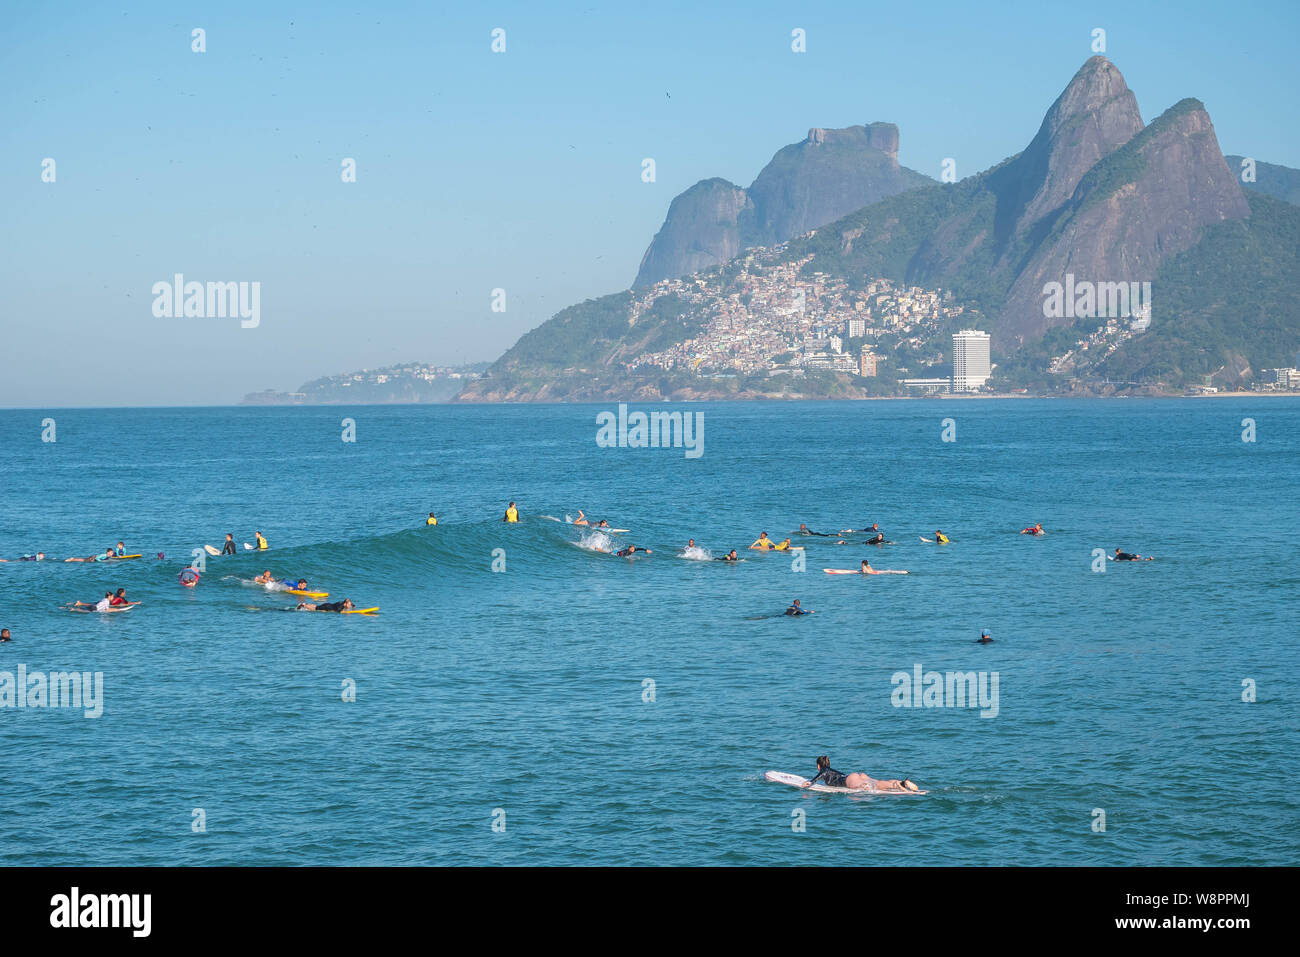 Rio de Janeiro, Brasilien - 10. August 2019: Arpoador, Ipanema Strand mit amateur Surfer warten auf Wellen auf das blaue Wasser und Berge als Backgr Stockfoto